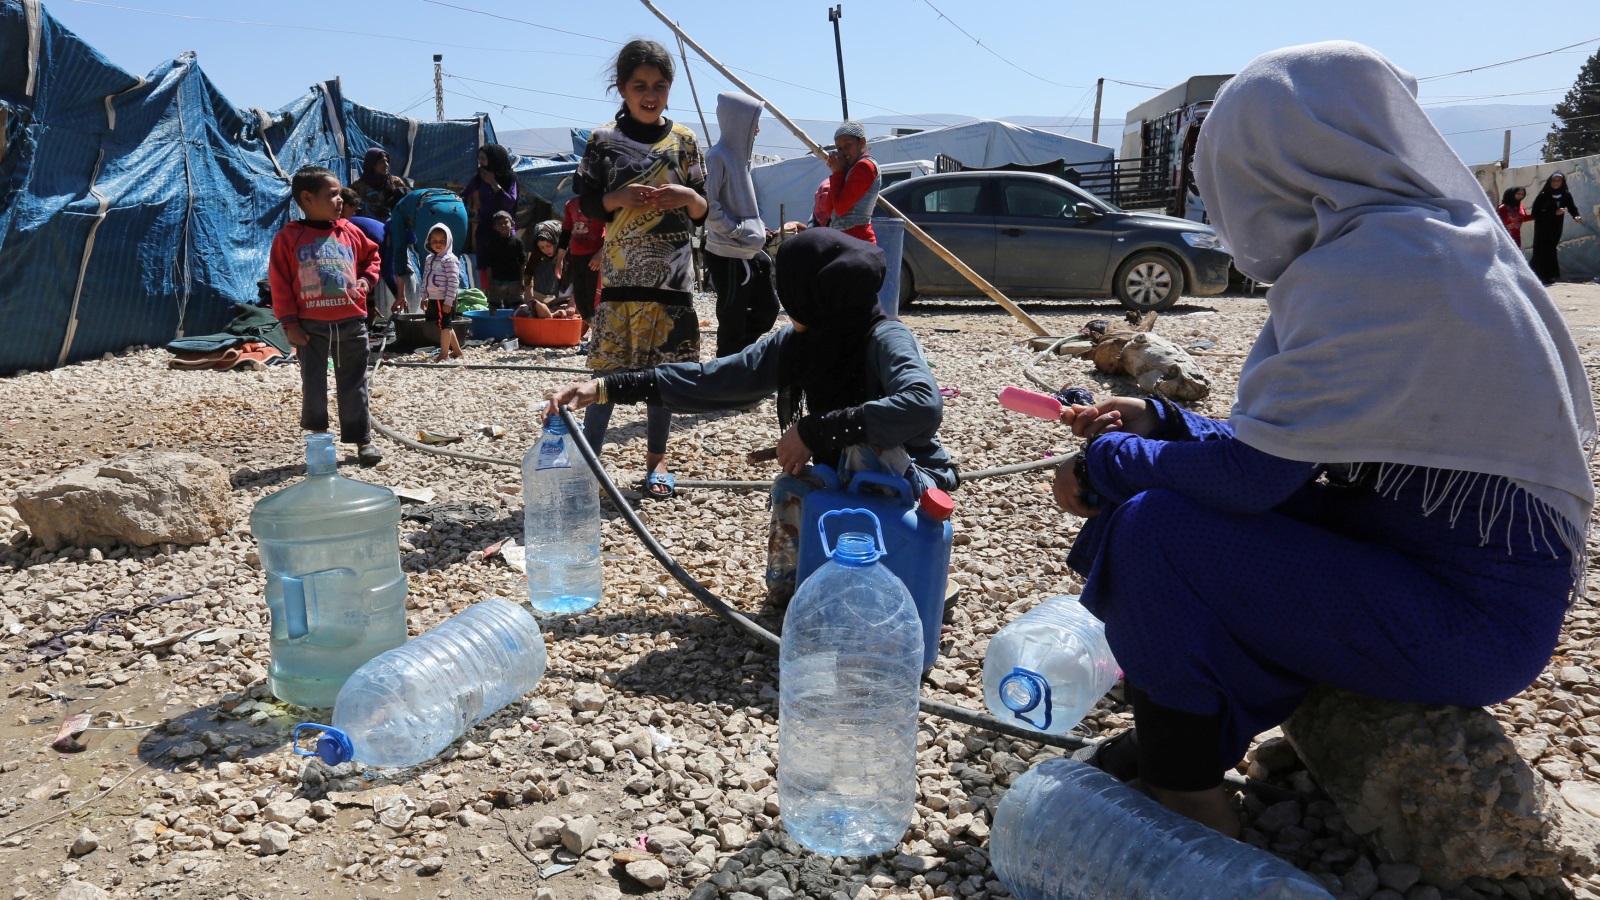 ‪الحكومة اللبنانية تبنت سلسلة إجراءات زادت من معاناة اللاجئين السوريين‬ الحكومة اللبنانية تبنت سلسلة إجراءات زادت من معاناة اللاجئين السوريين (رويترز)